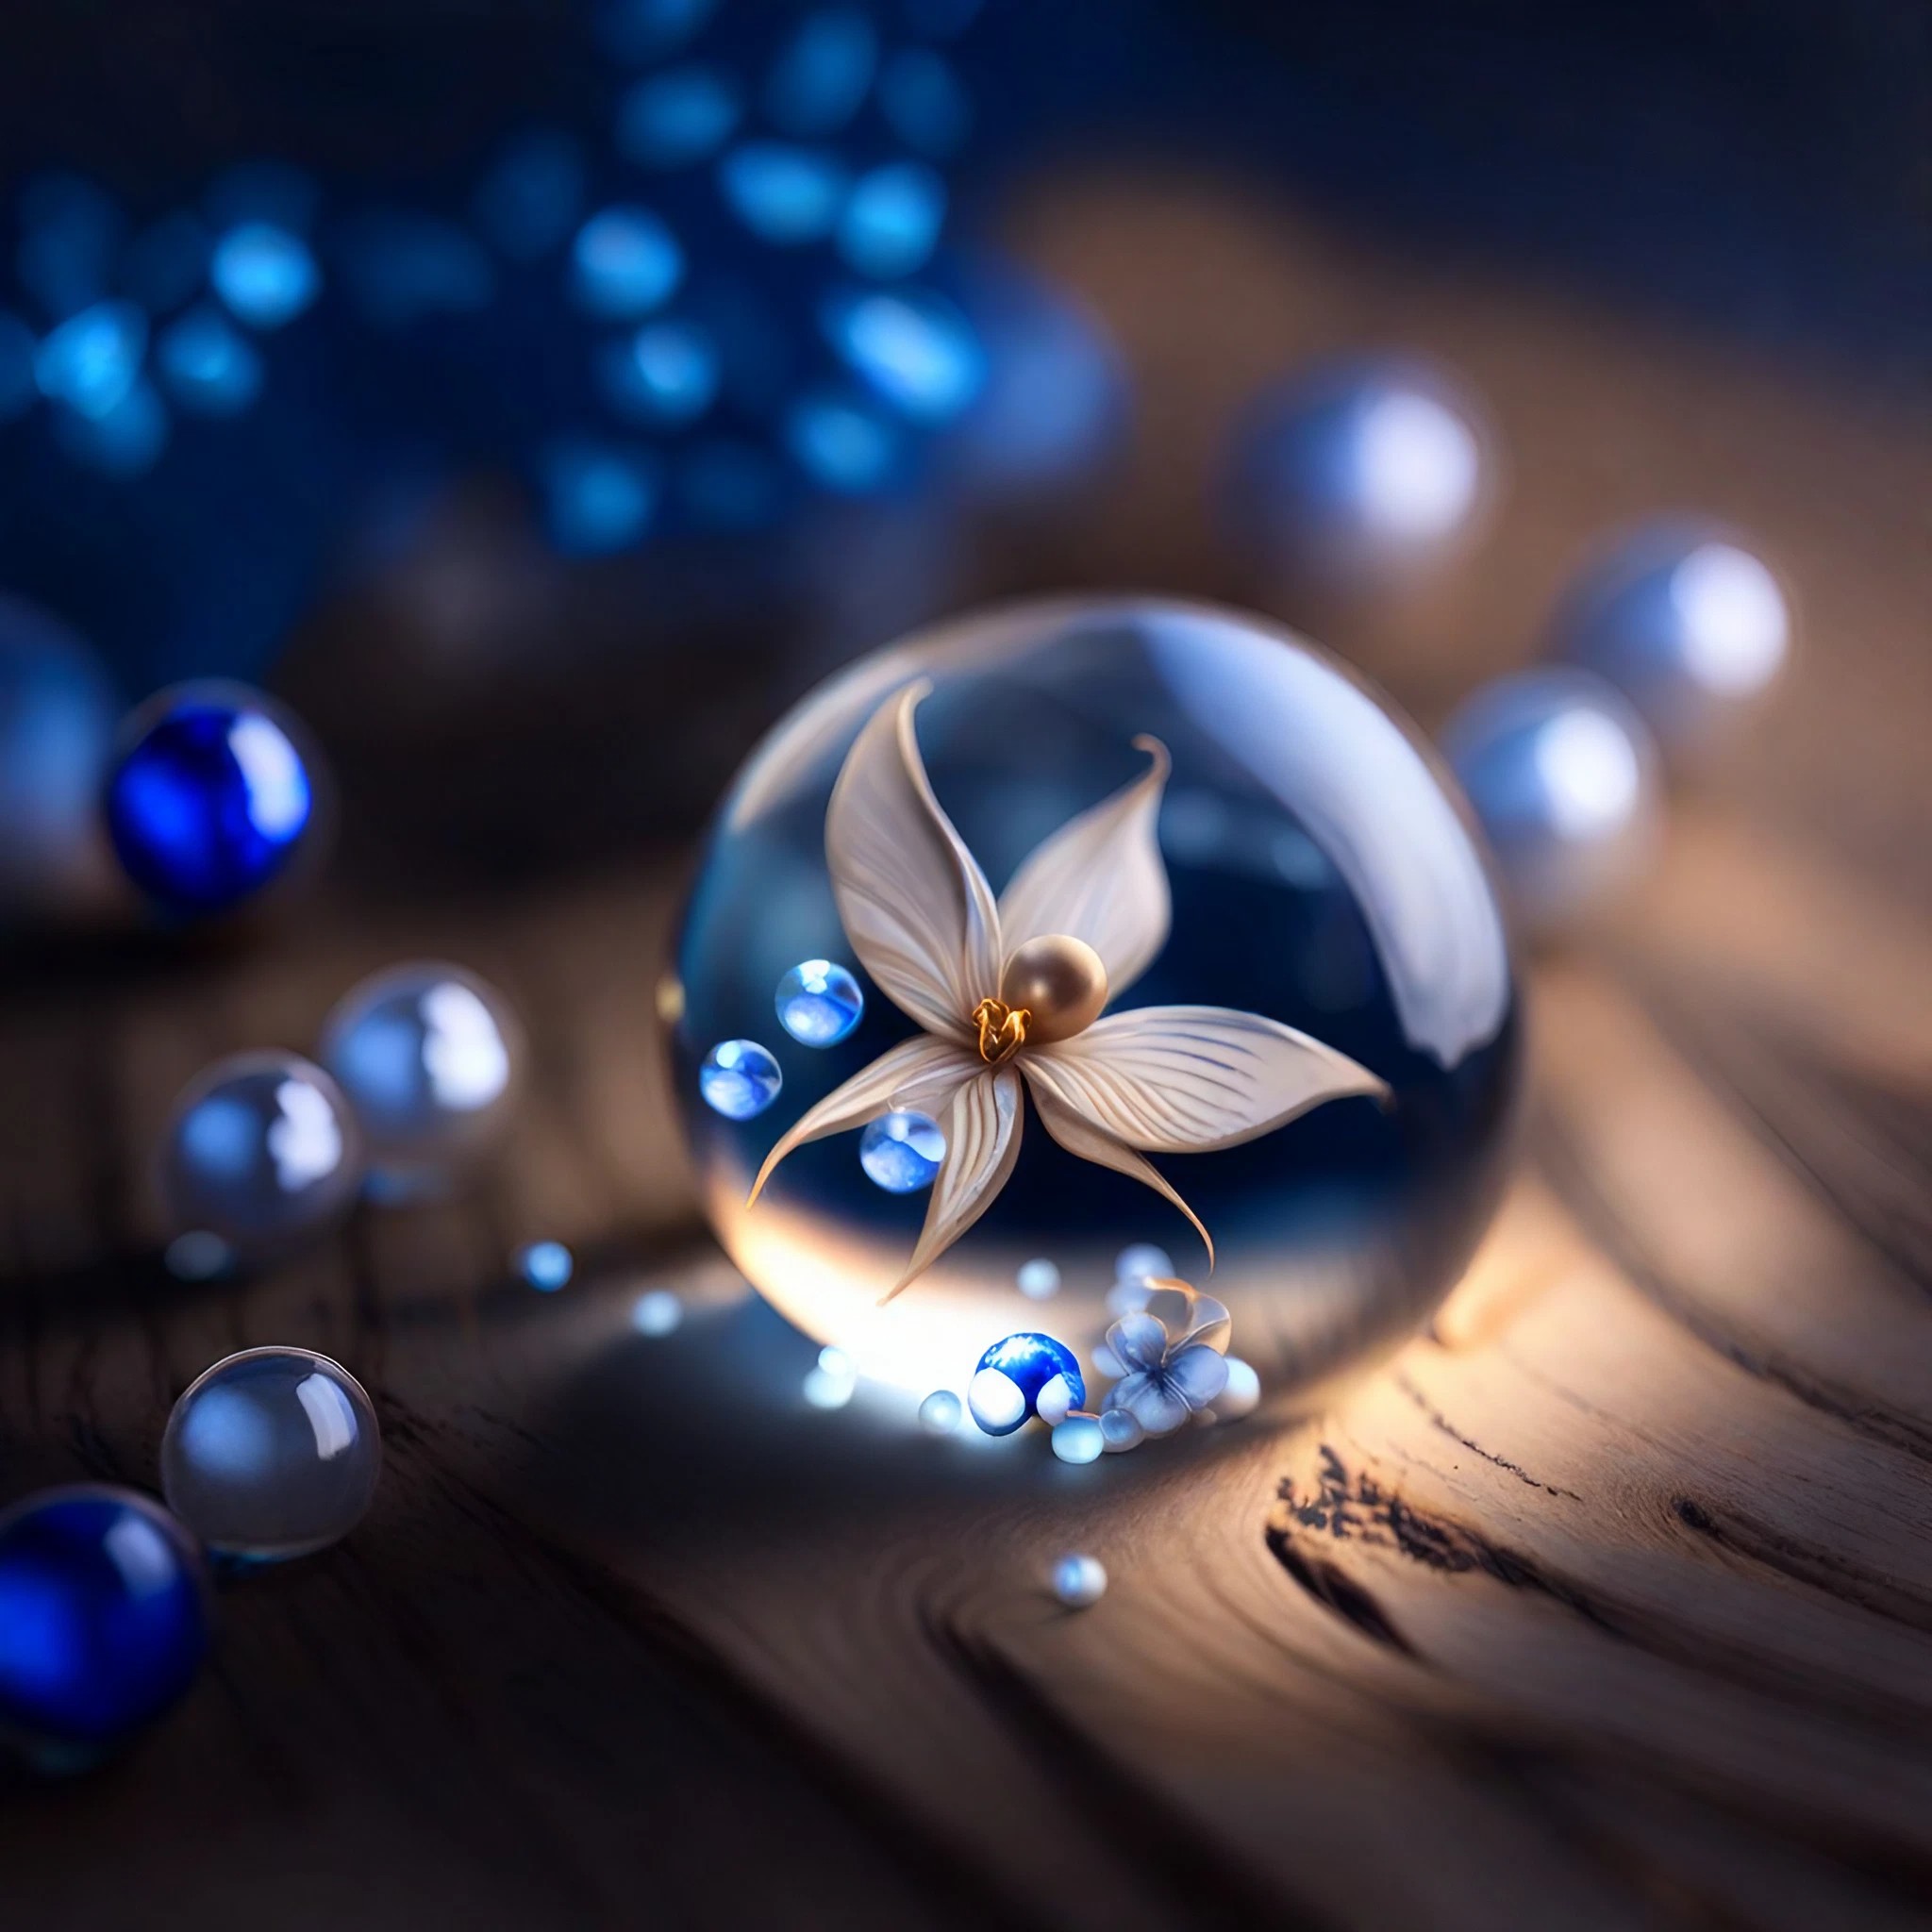 綺麗に青く煌めく水玉＆ビーズの中の白い花のリアルな写真風ファンタジーイラスト